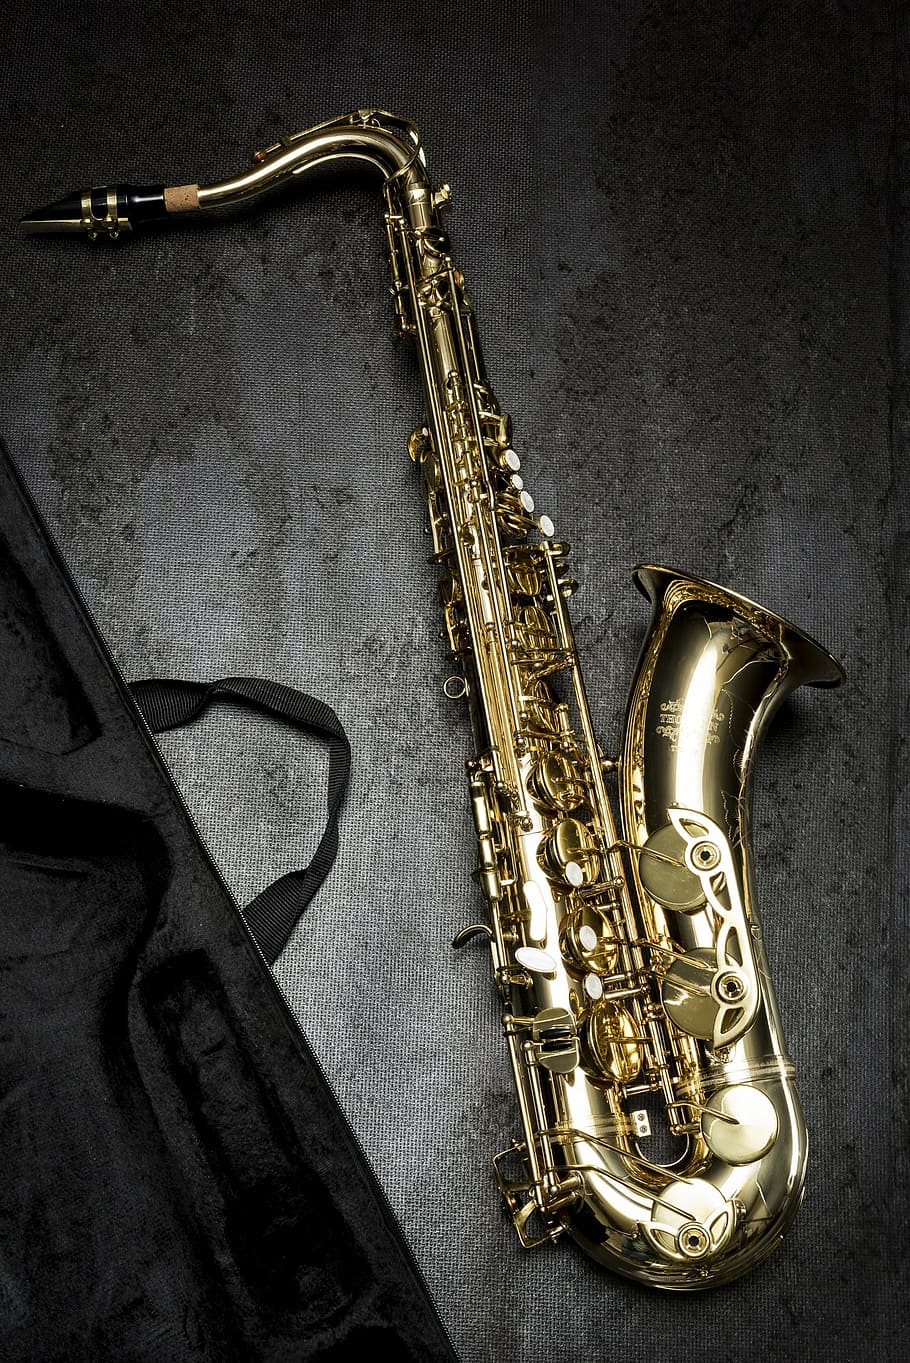 saxofone de ouro, saxofone, música, natureza morta, instrumento musical, arte, cultura e entretenimento, metal, dentro de casa, instrumento de sopro